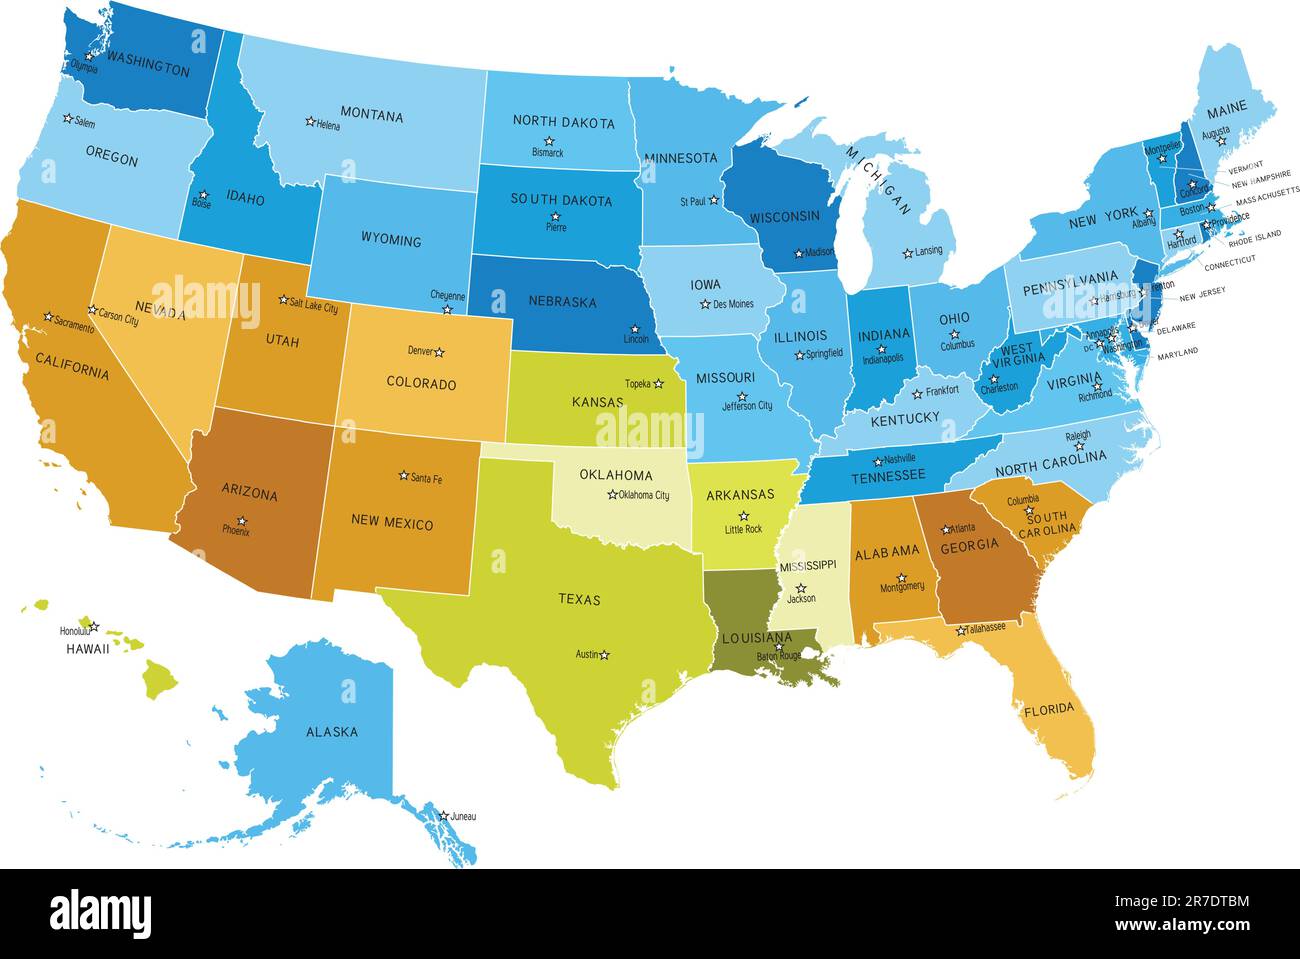 Carte des États-Unis avec les noms des villes. Le fichier EPS contient des calques séparés avec le nom d'état et de viscosité, les limites et le calque avec les comtés. Mapper la source... Illustration de Vecteur